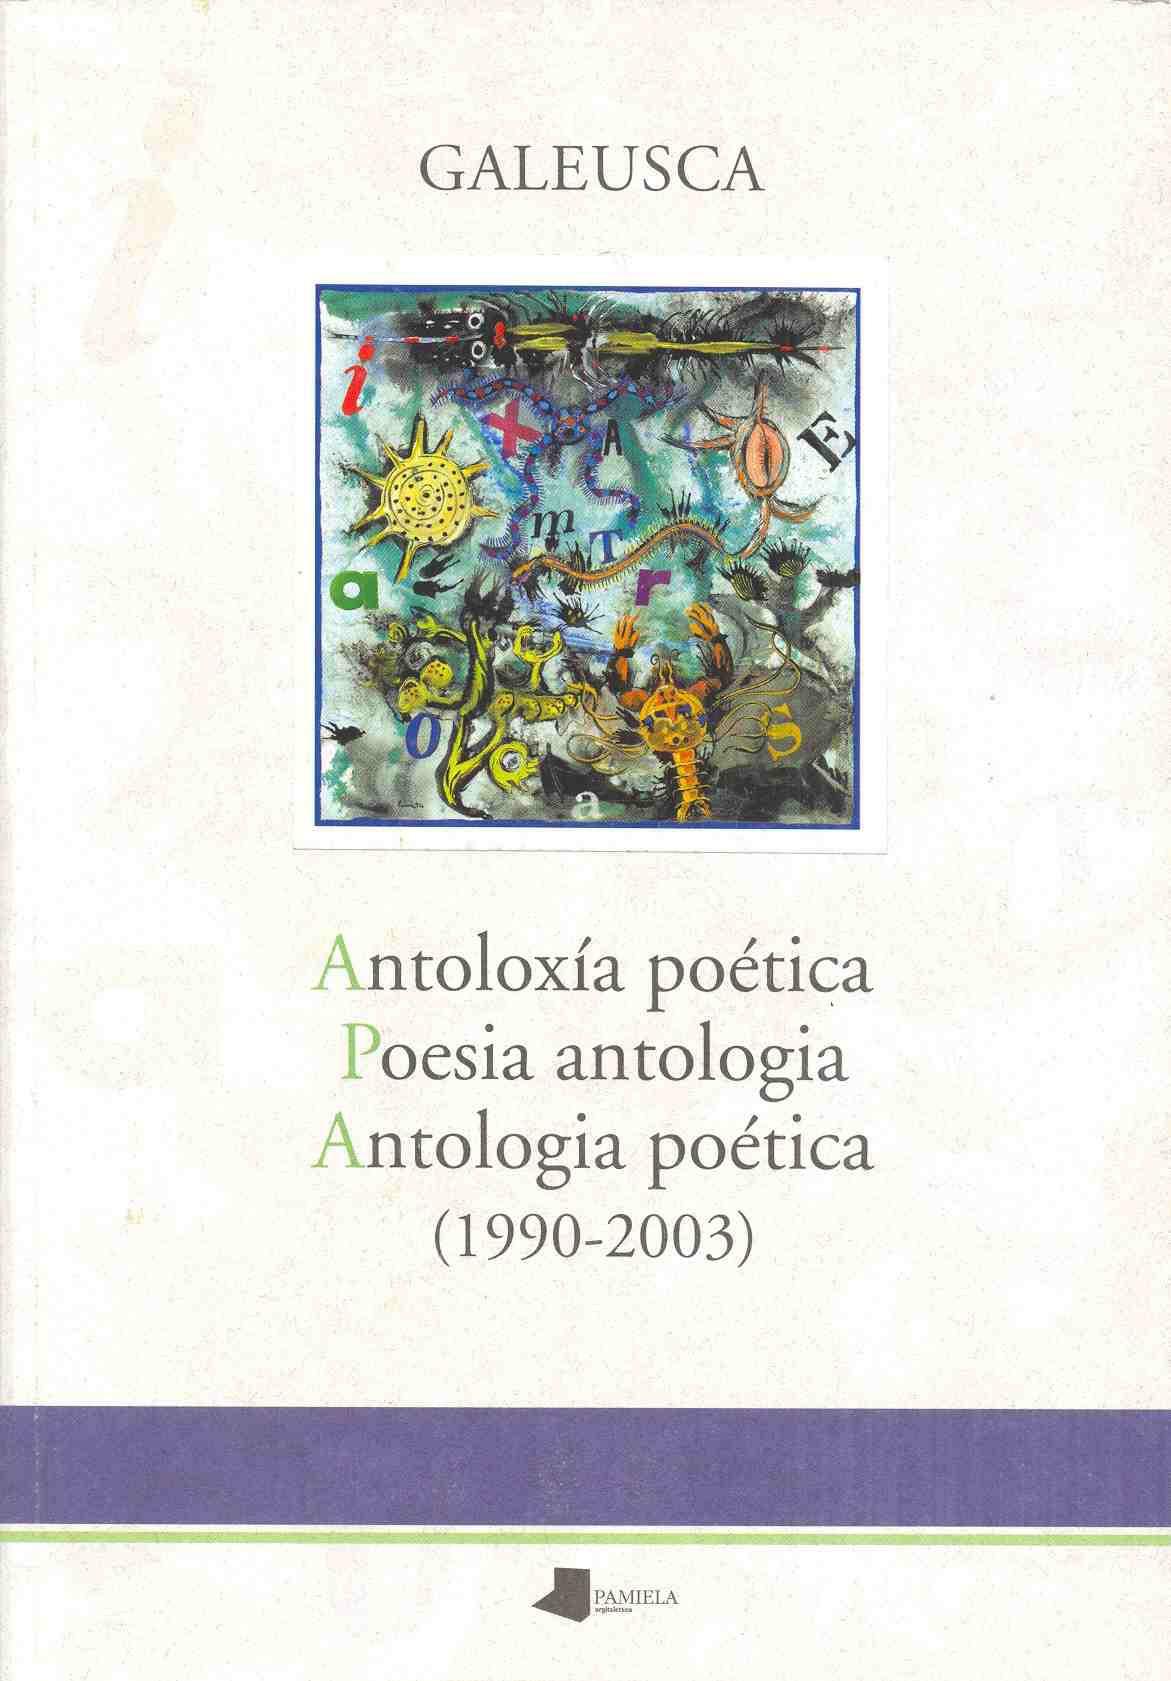 Antoloxía poética / Poesia antologia / Antologia poética (1990-2003)